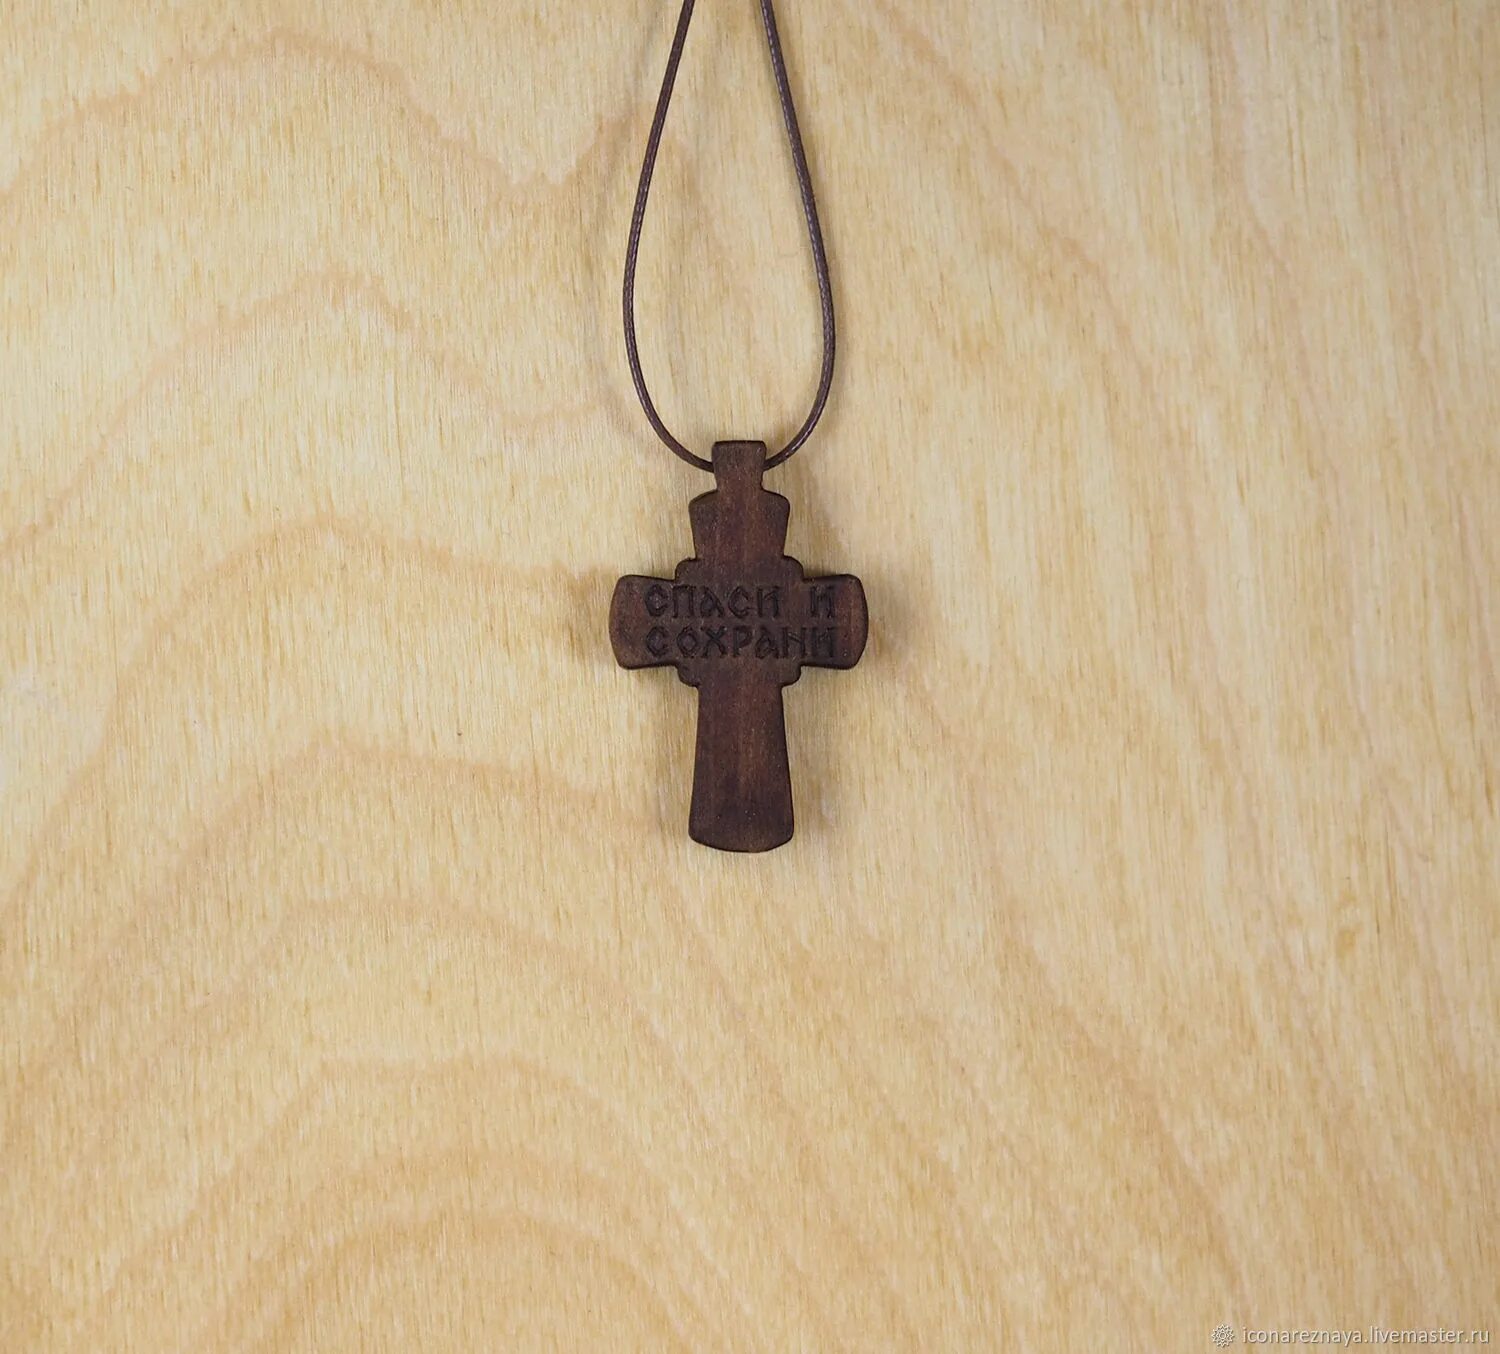 Кипарисовый нательный крестик. Крест нательный деревянный. Деревянный крестик на шею. Нательный крестик из дерева.